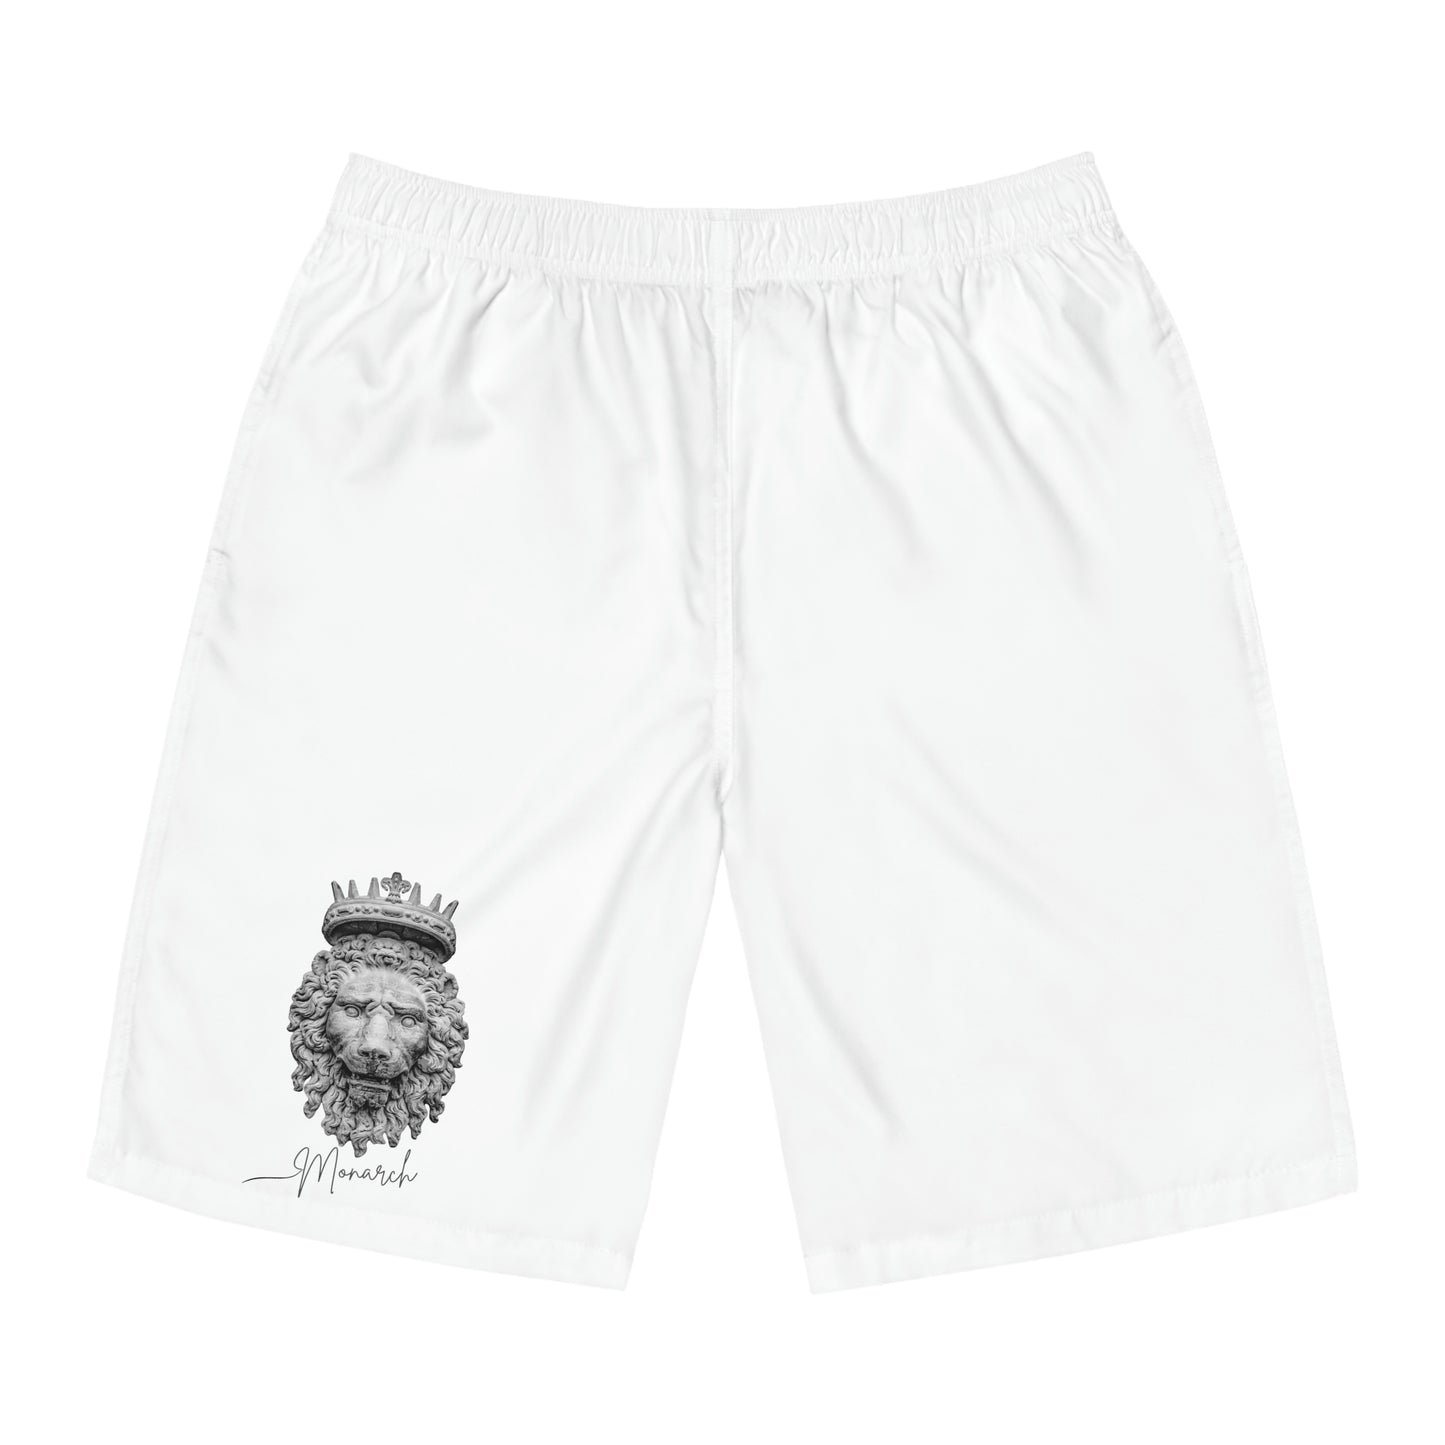 Men's Shorts "Monarch"